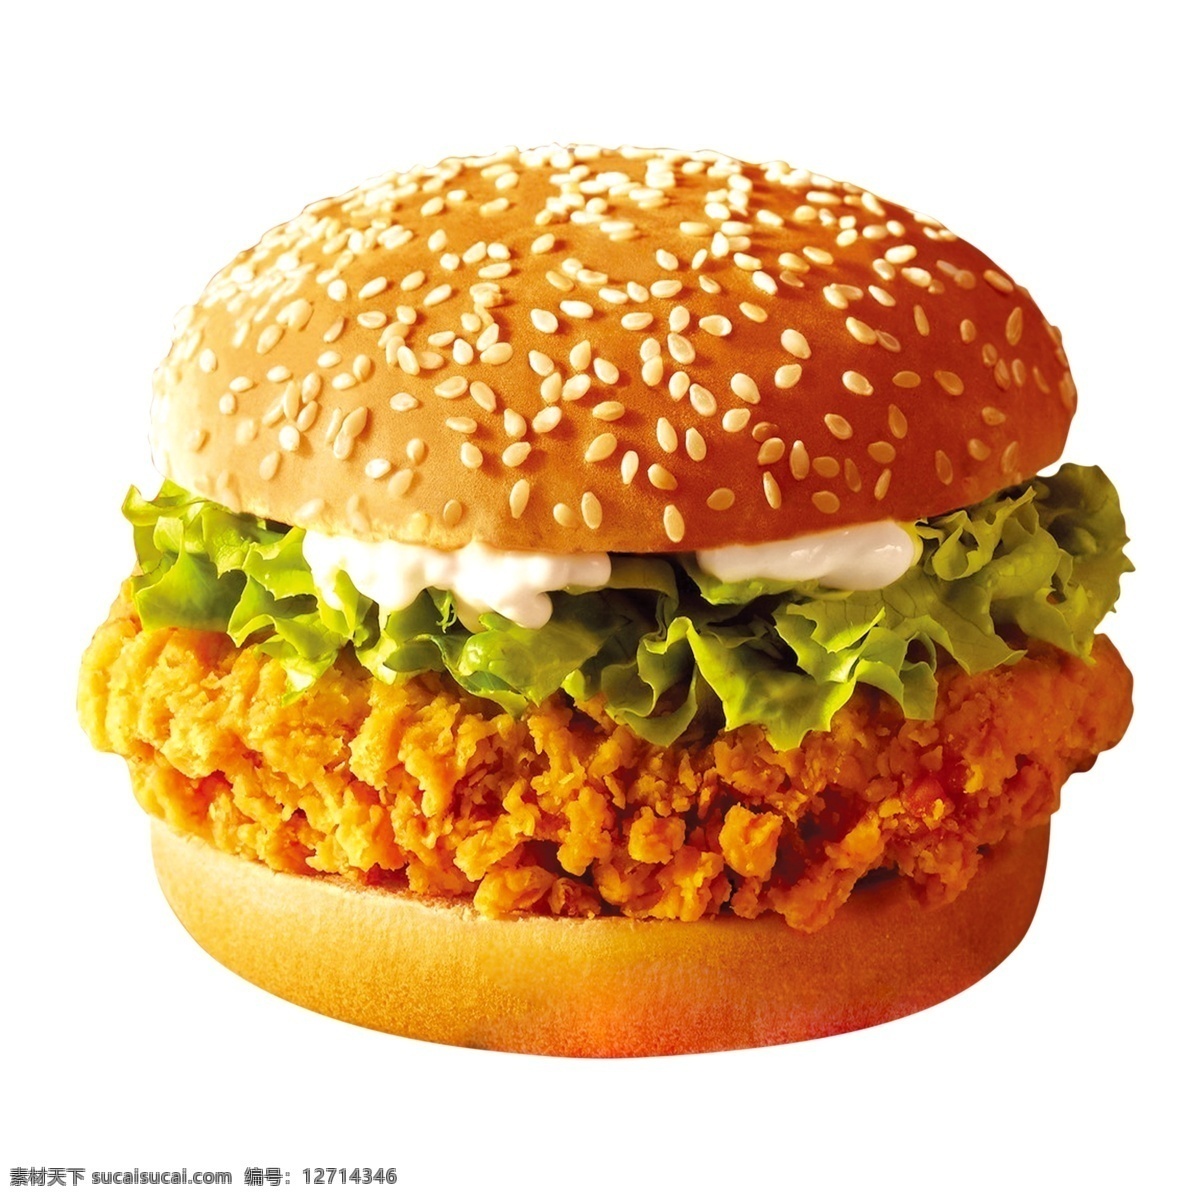 巨无霸 快餐 汉堡 美式 分层 套餐 广告 dm 菜单 快餐店 饮品店 西餐 快餐图片